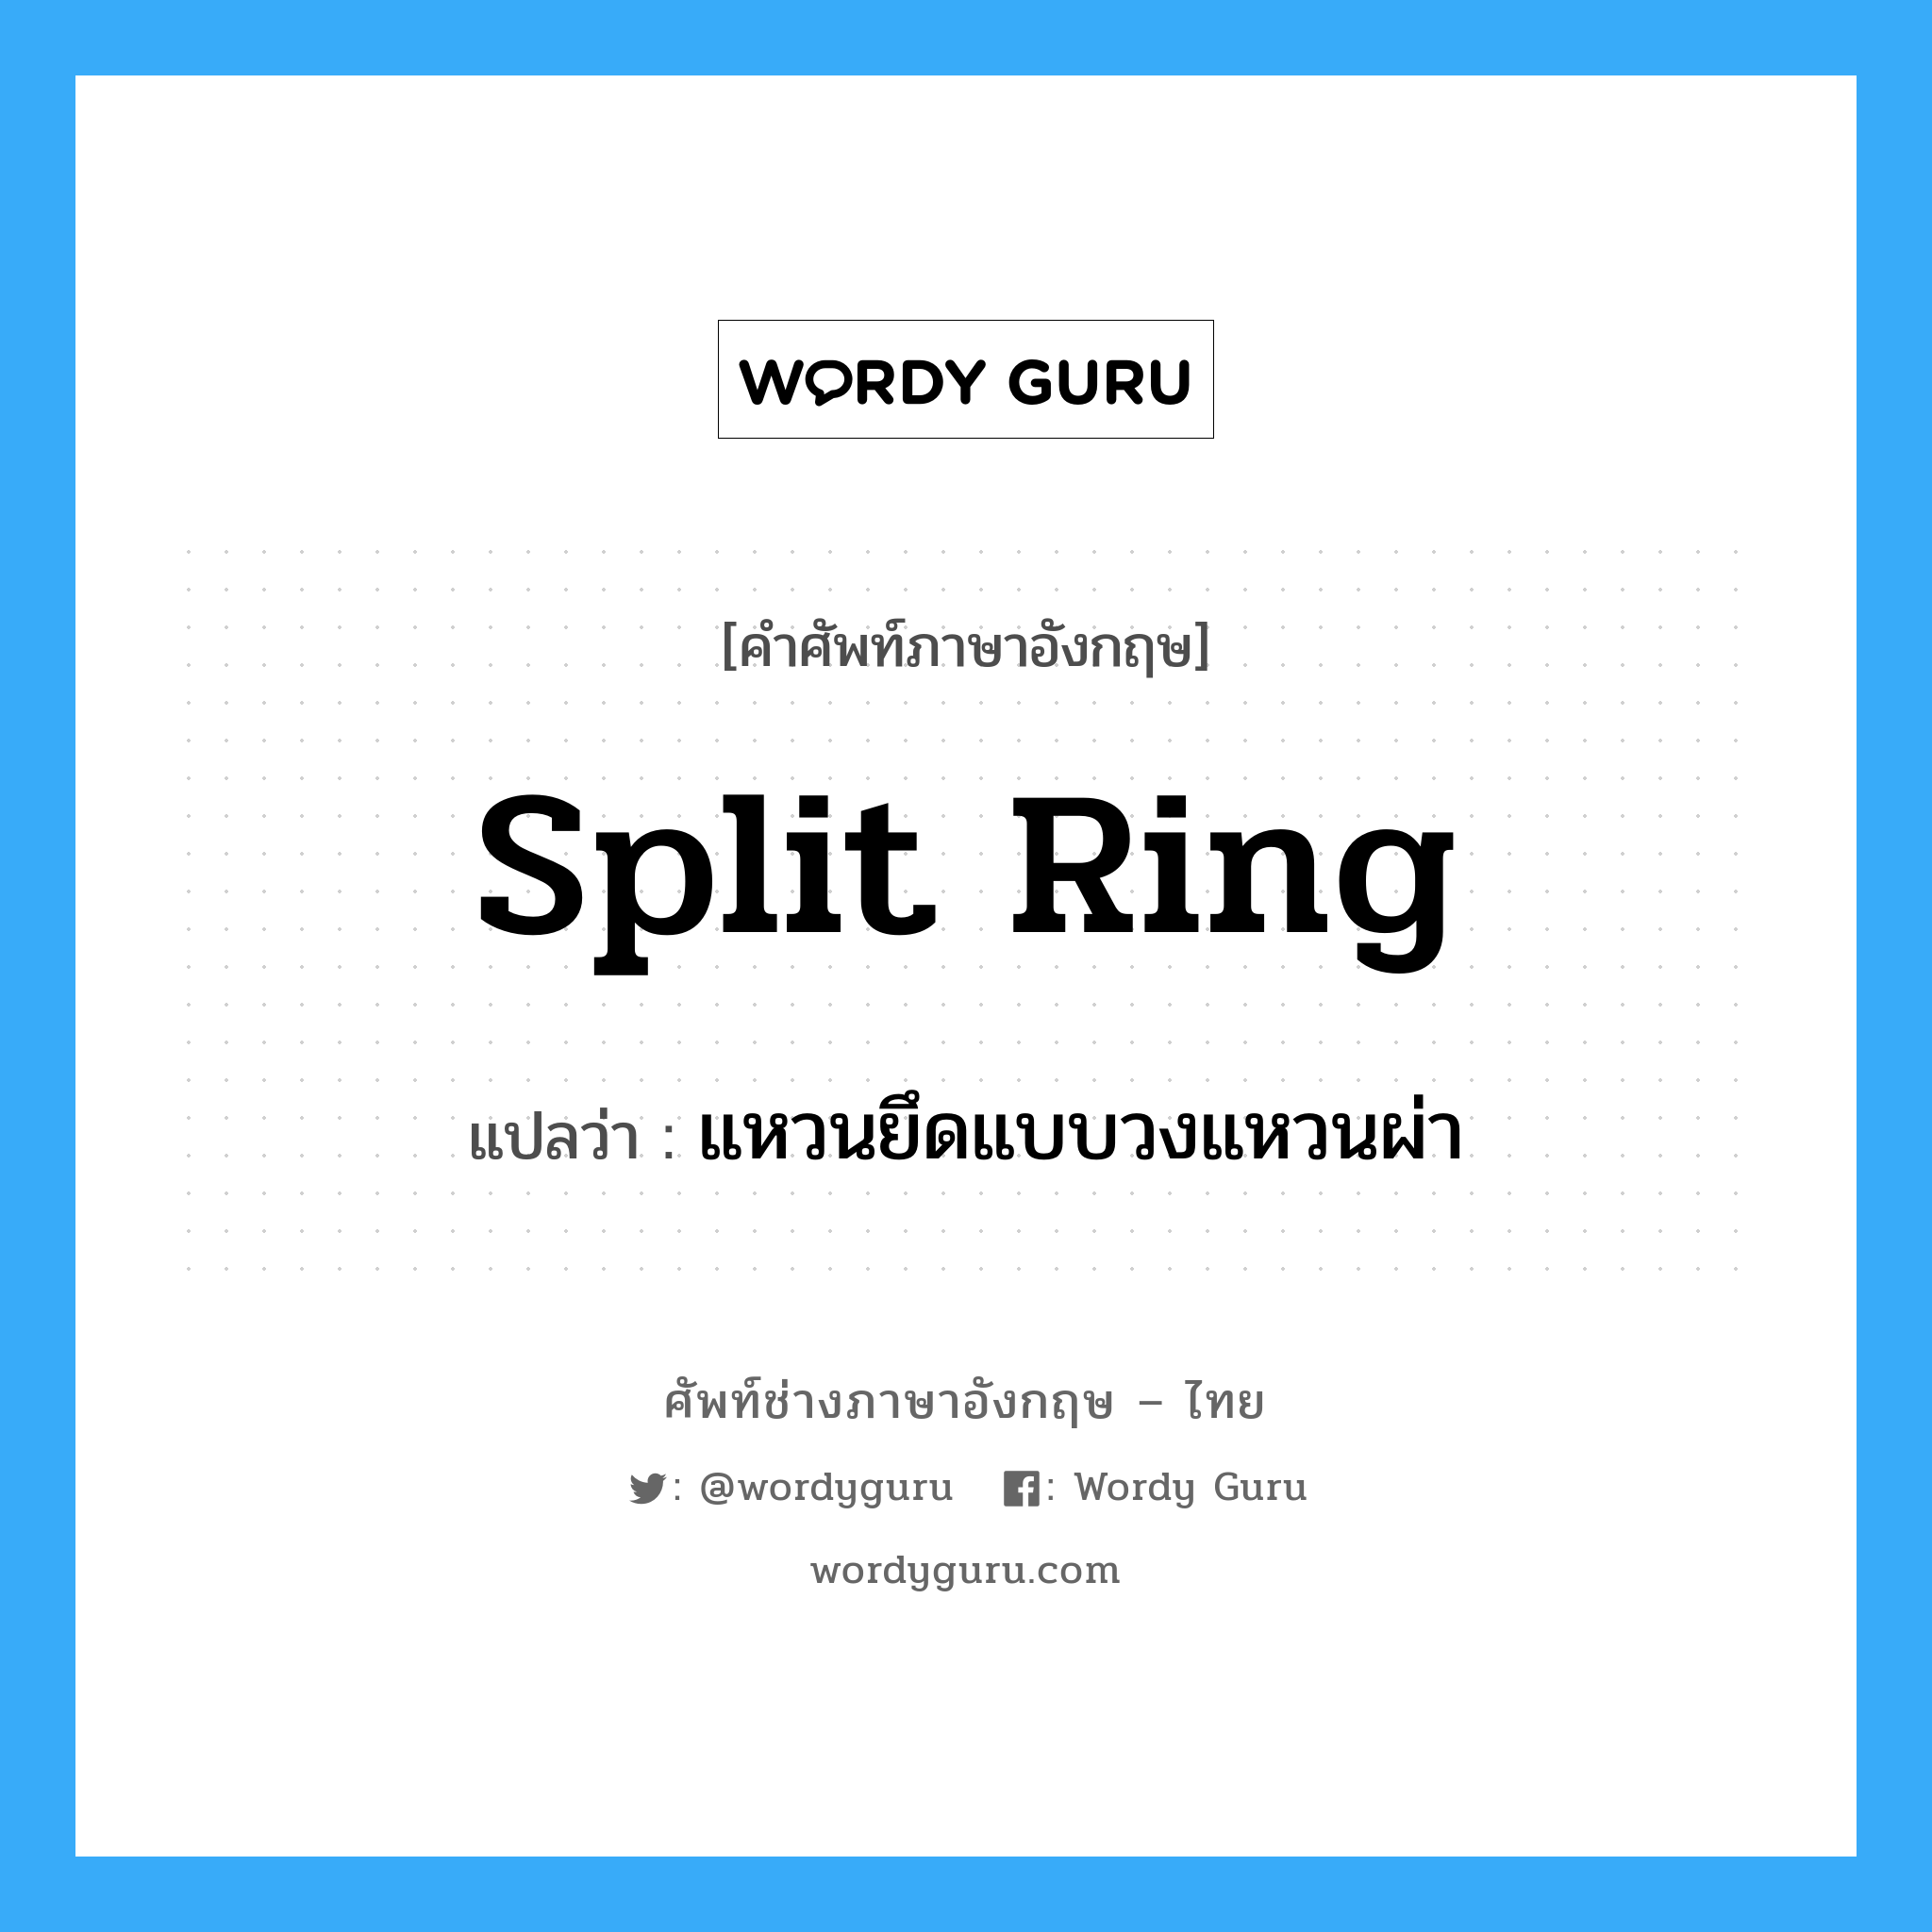 แหวนยึดแบบวงแหวนผ่า ภาษาอังกฤษ?, คำศัพท์ช่างภาษาอังกฤษ - ไทย แหวนยึดแบบวงแหวนผ่า คำศัพท์ภาษาอังกฤษ แหวนยึดแบบวงแหวนผ่า แปลว่า split ring